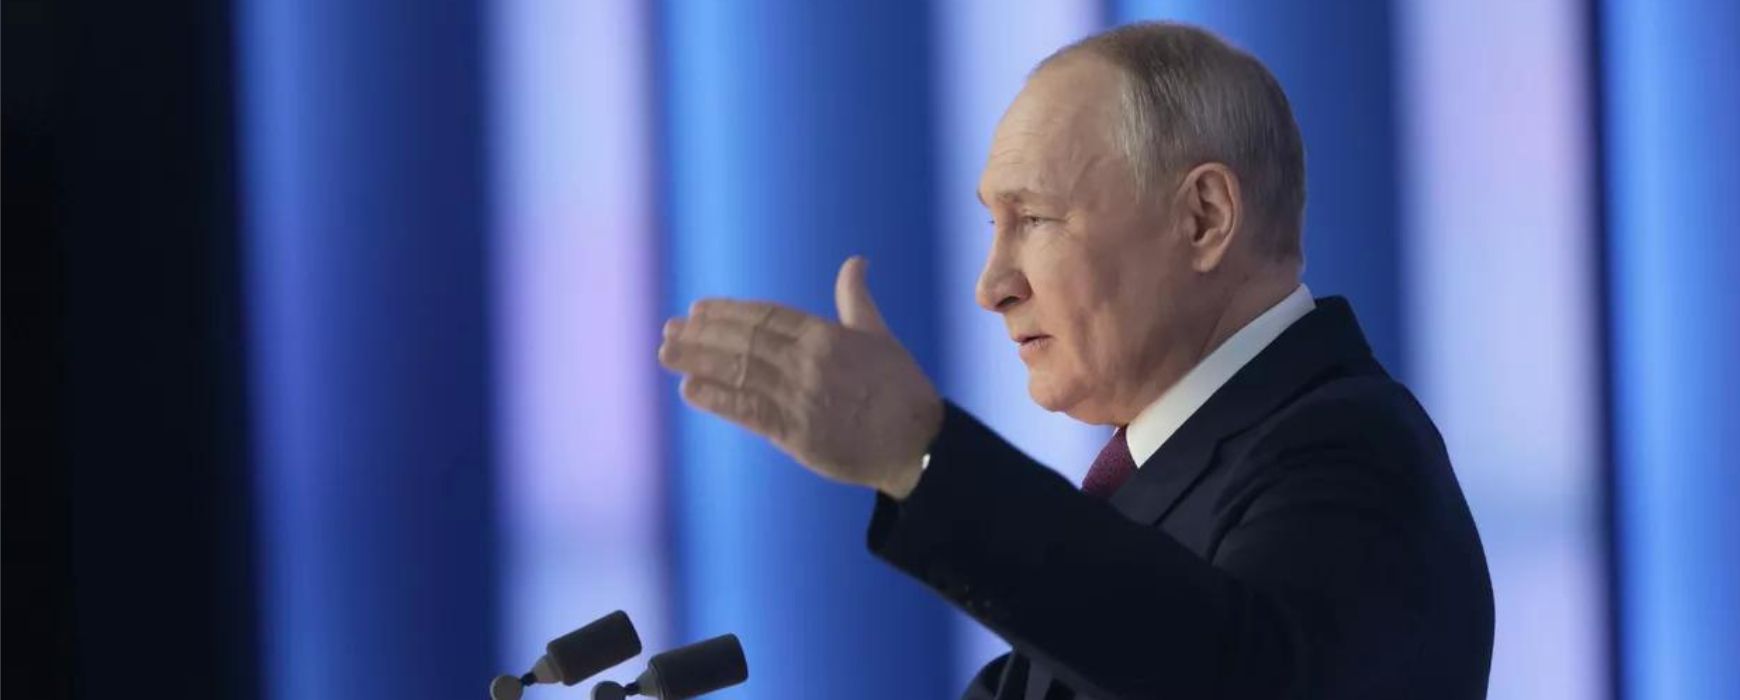 Πούτιν: Η Μόσχα πρέπει να λάβει υπόψη της τις πυρηνικές δυνατότητες του ΝΑΤΟ